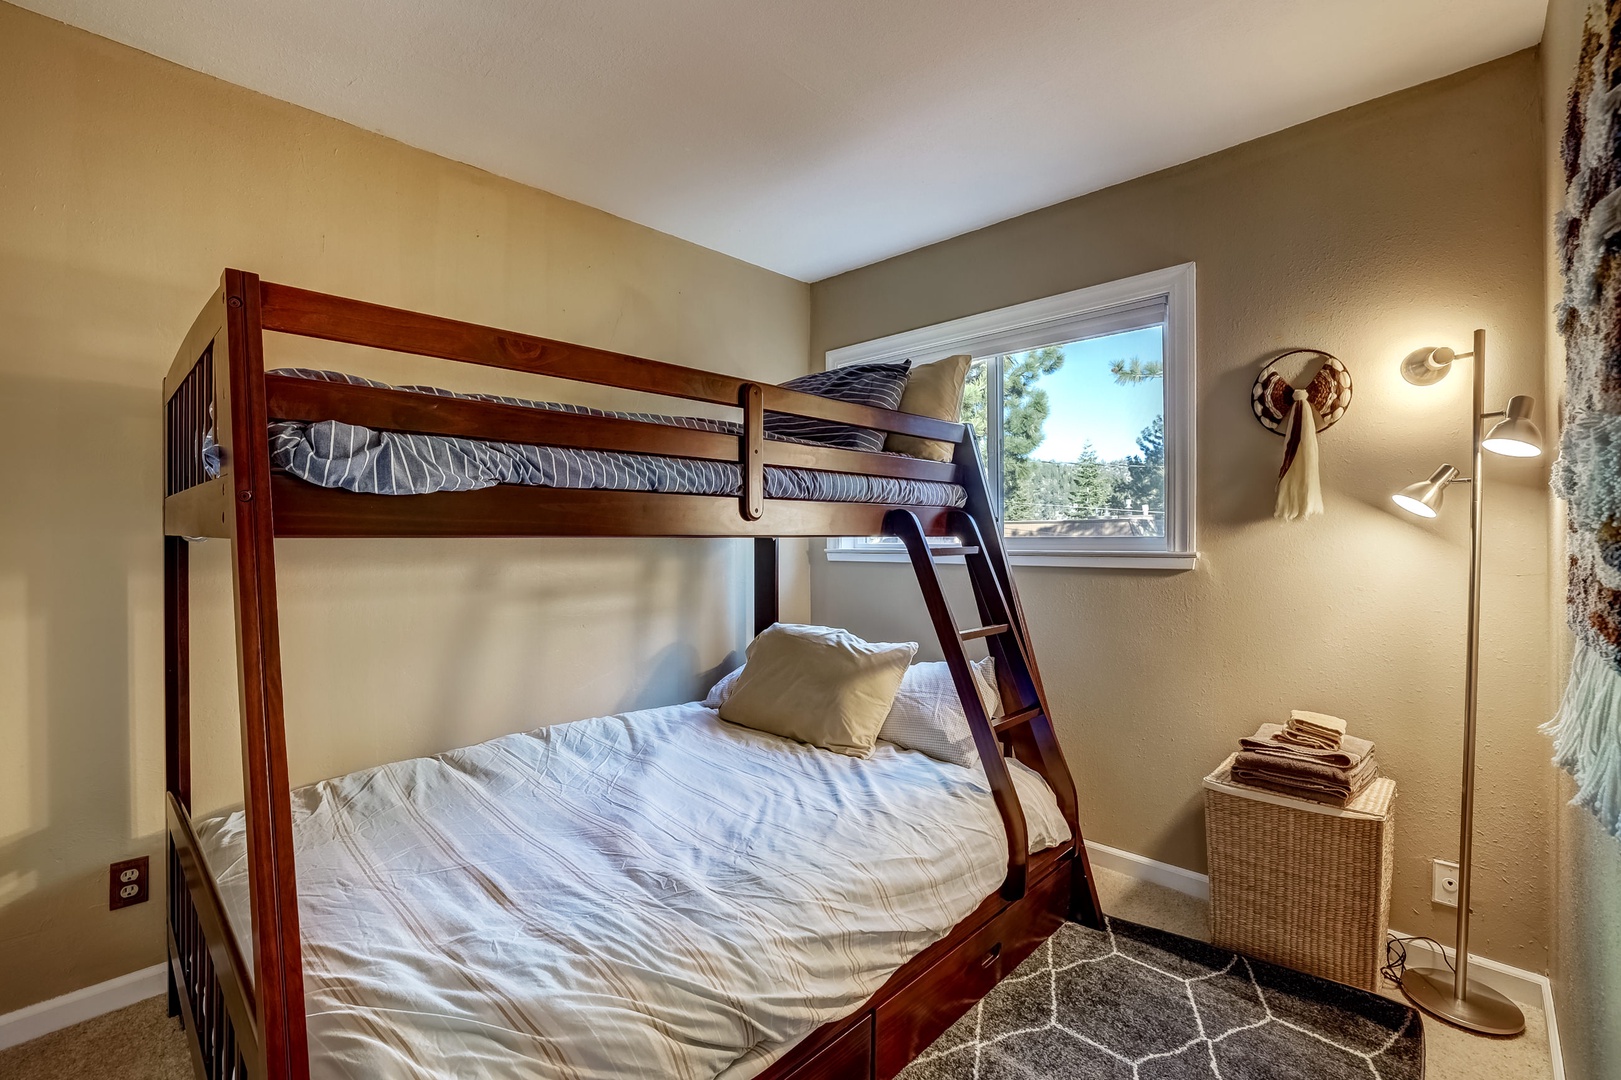 Bedroom 2: Twin/Queen bunk bed